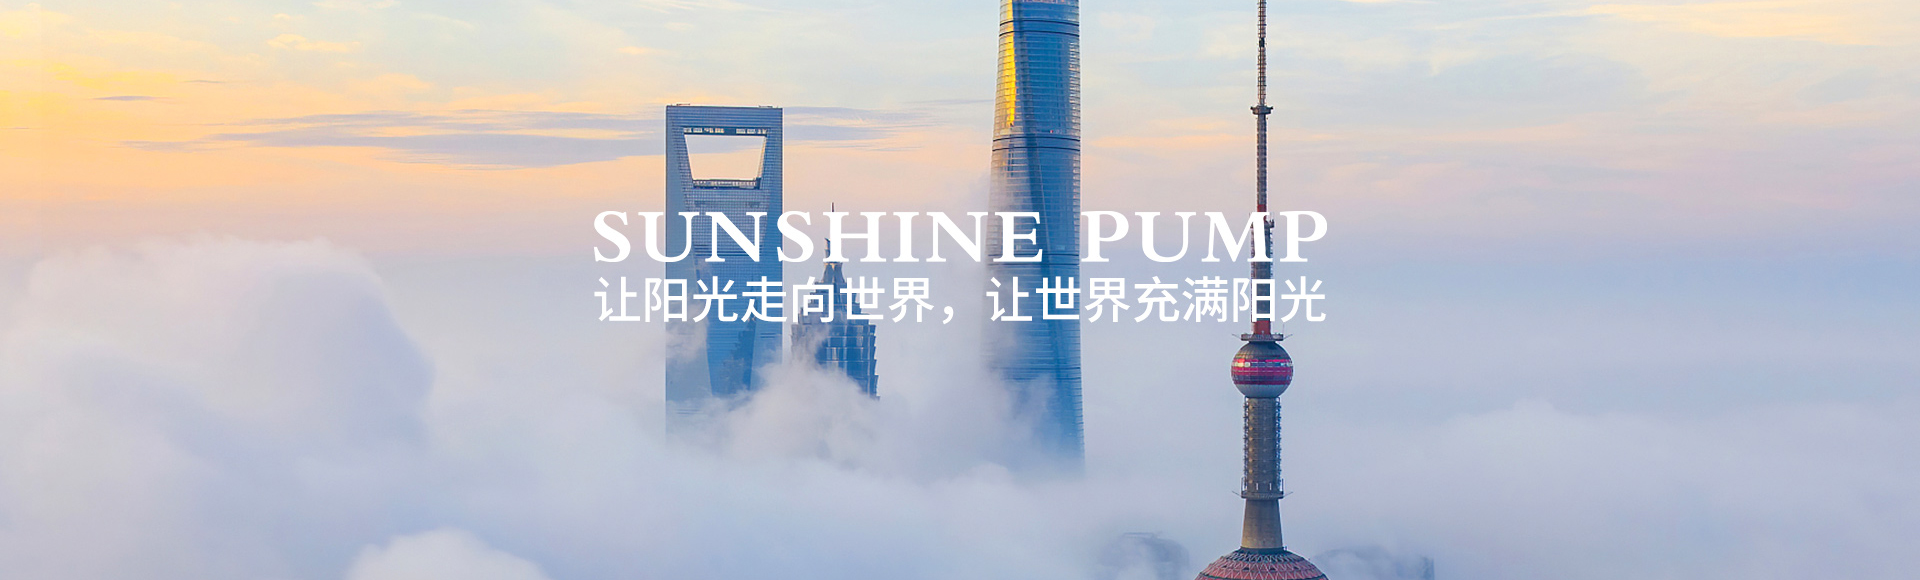 上海阳光泵业制造有限公司